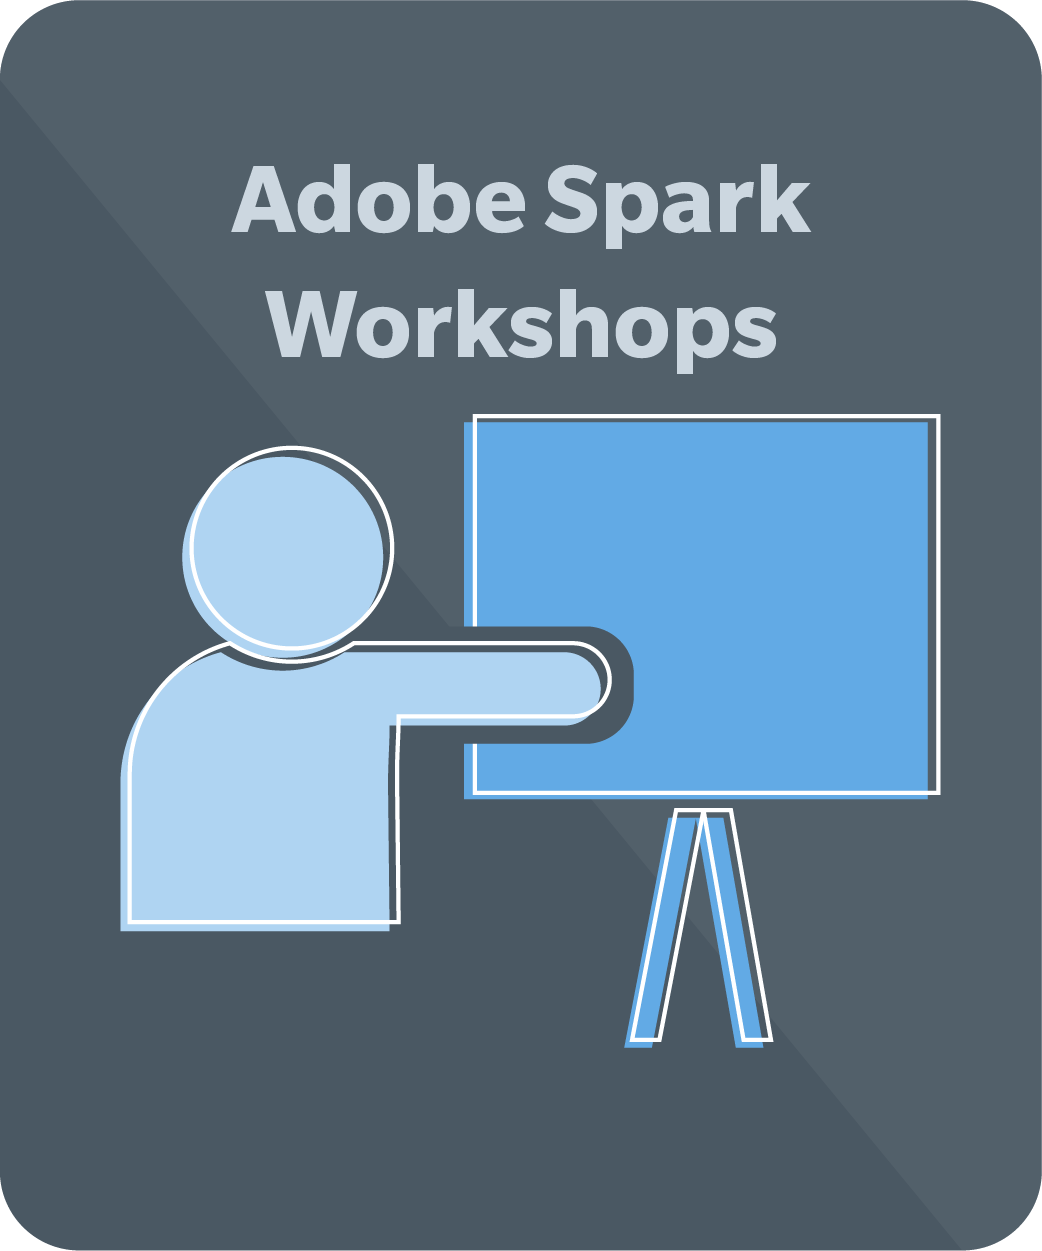 Adobe Spark Workshops